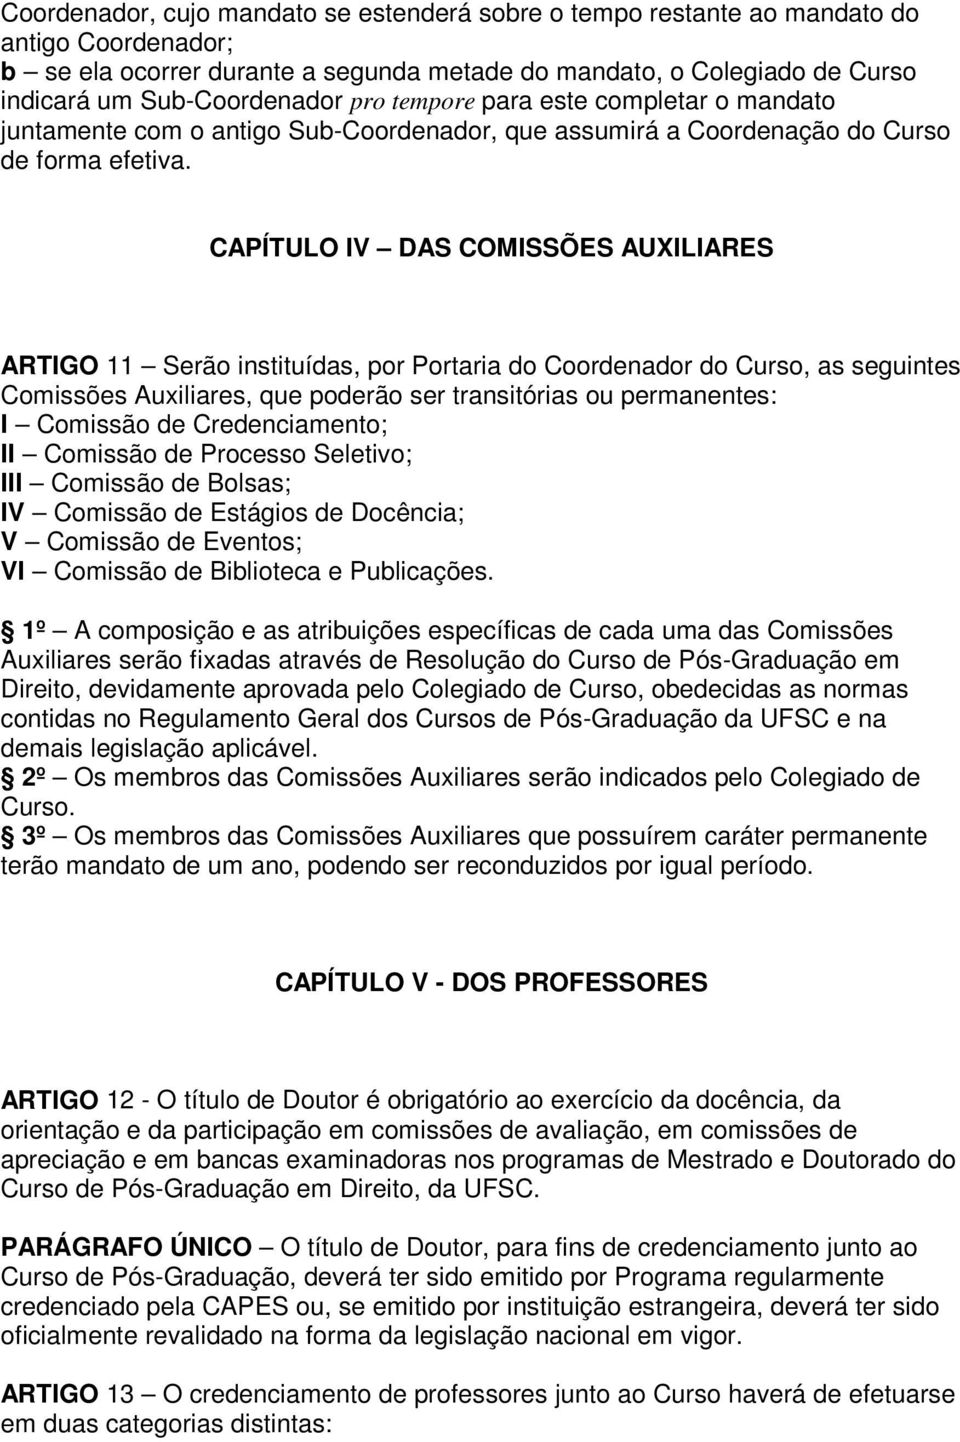 CAPÍTULO IV DAS COMISSÕES AUXILIARES ARTIGO 11 Serão instituídas, por Portaria do Coordenador do Curso, as seguintes Comissões Auxiliares, que poderão ser transitórias ou permanentes: I Comissão de